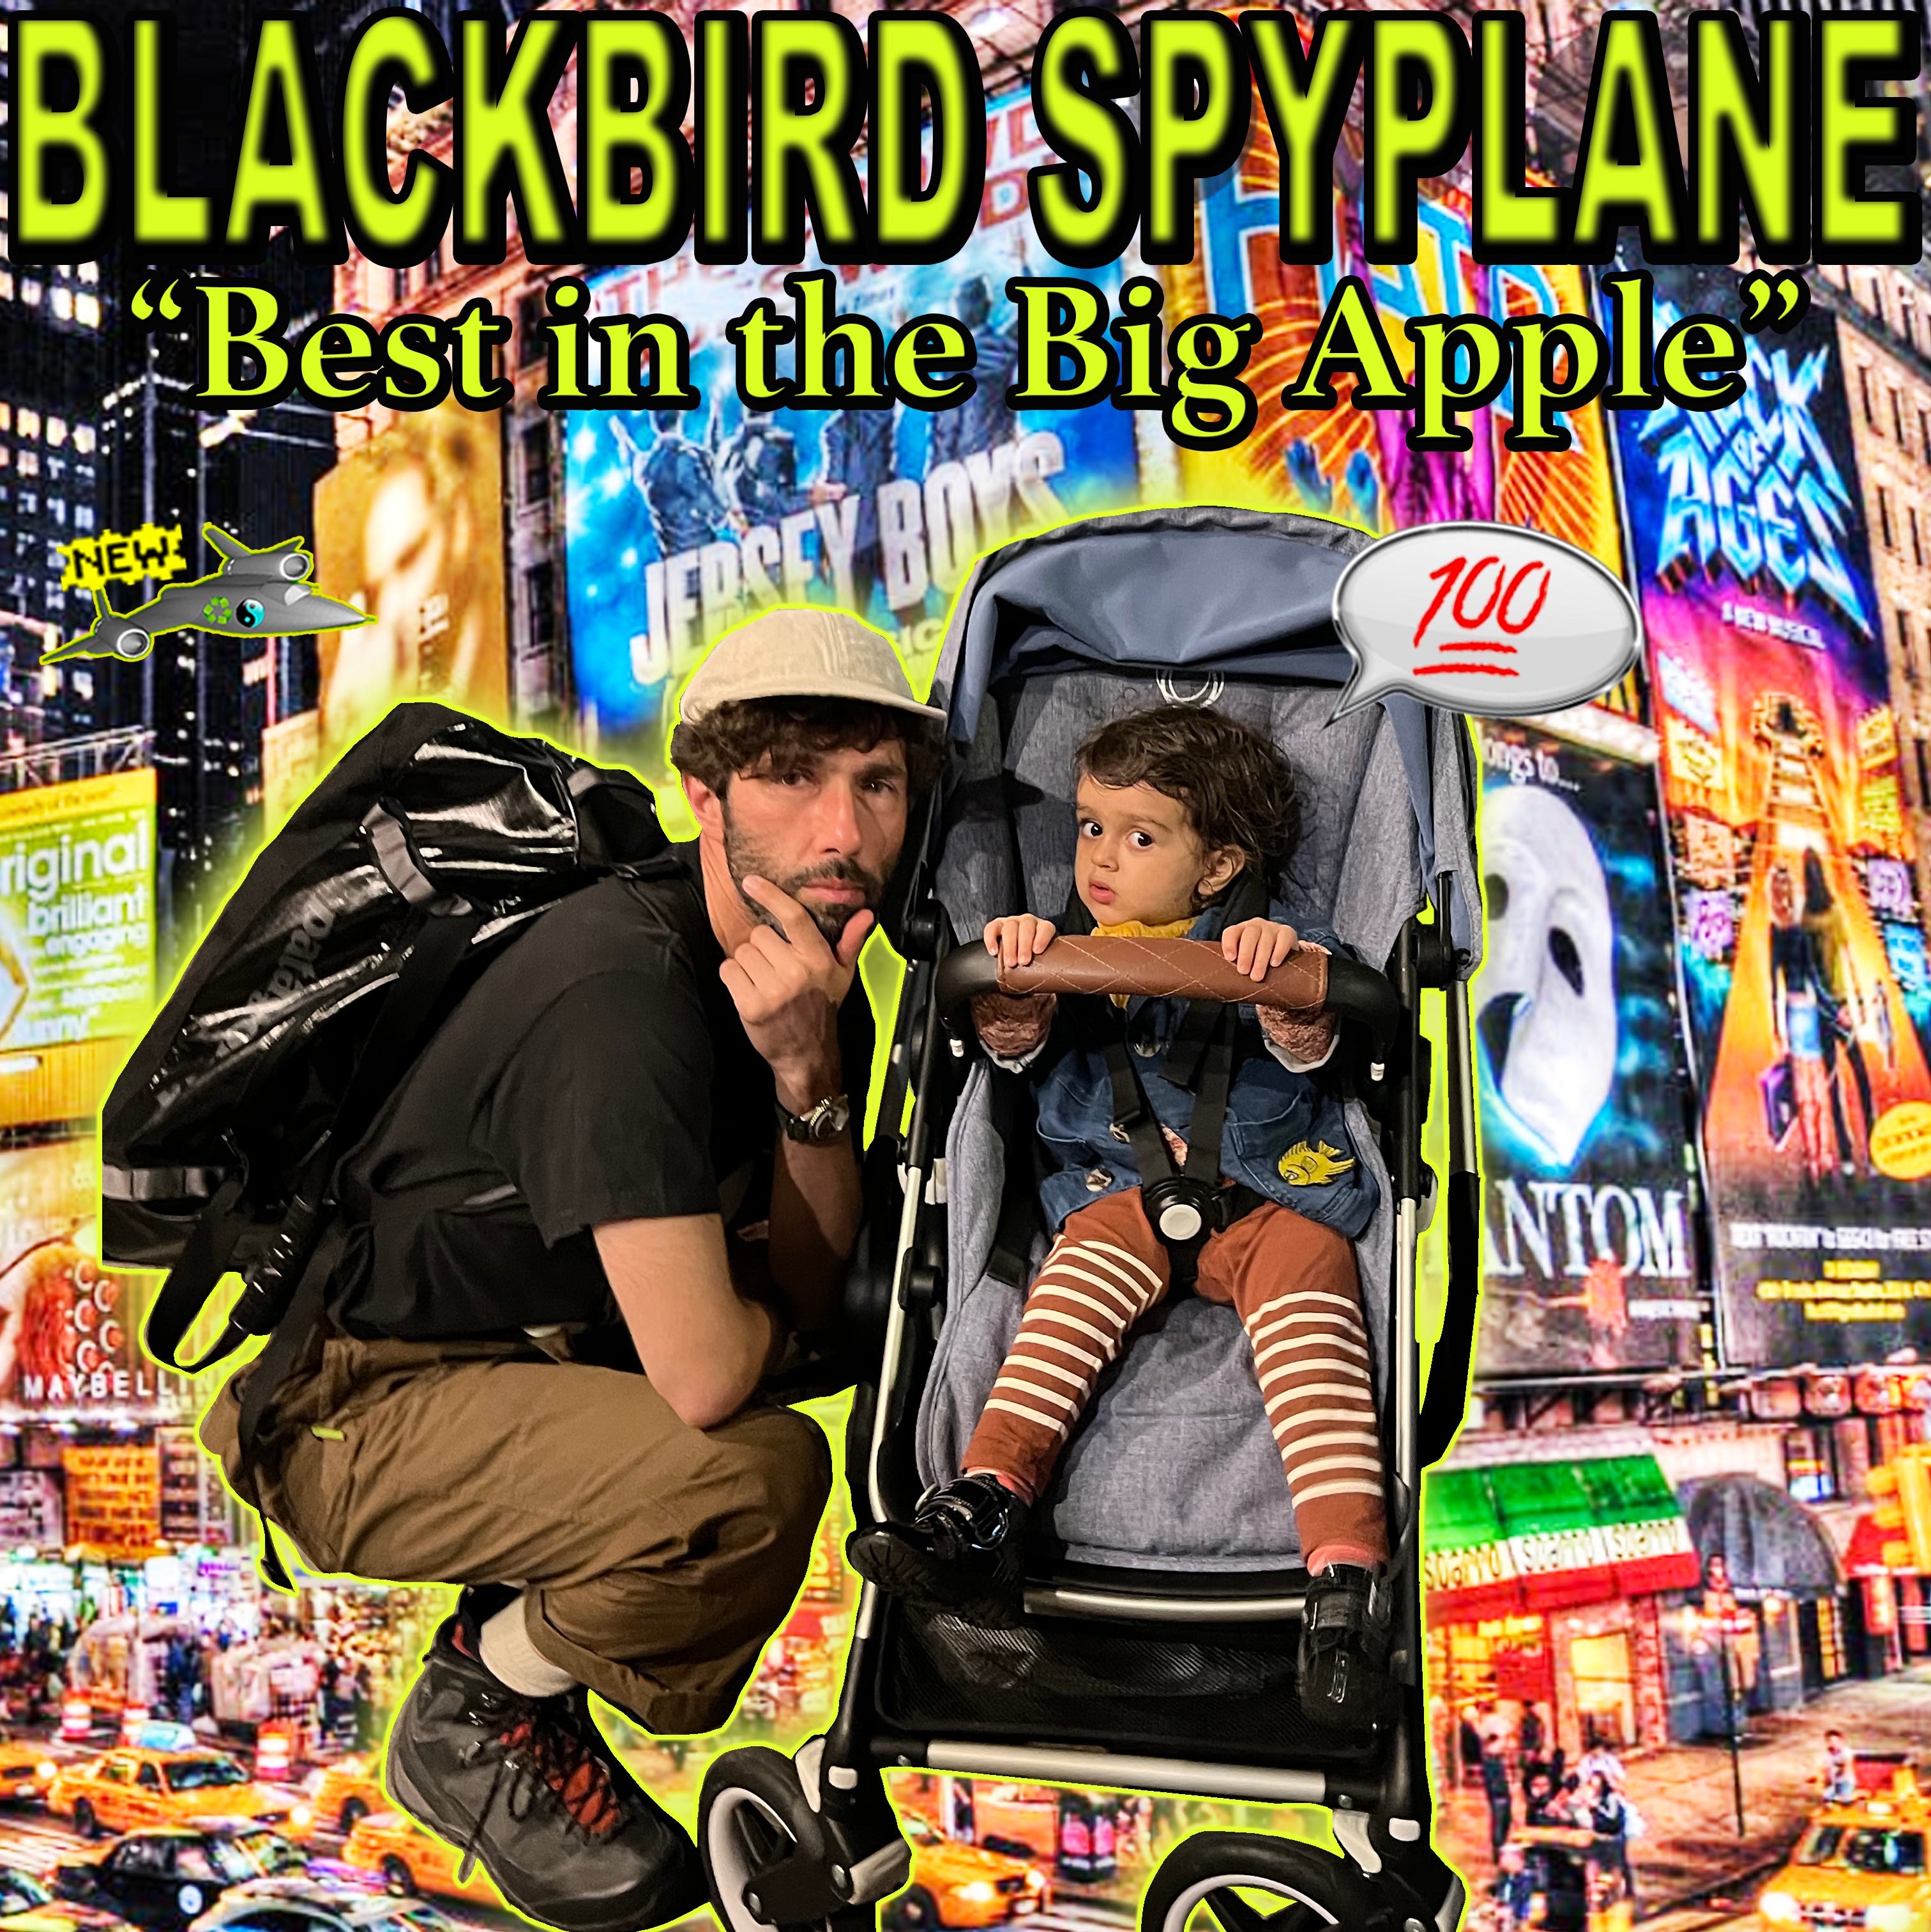 NYC's not as cool as Oakland - Blackbird Spyplane